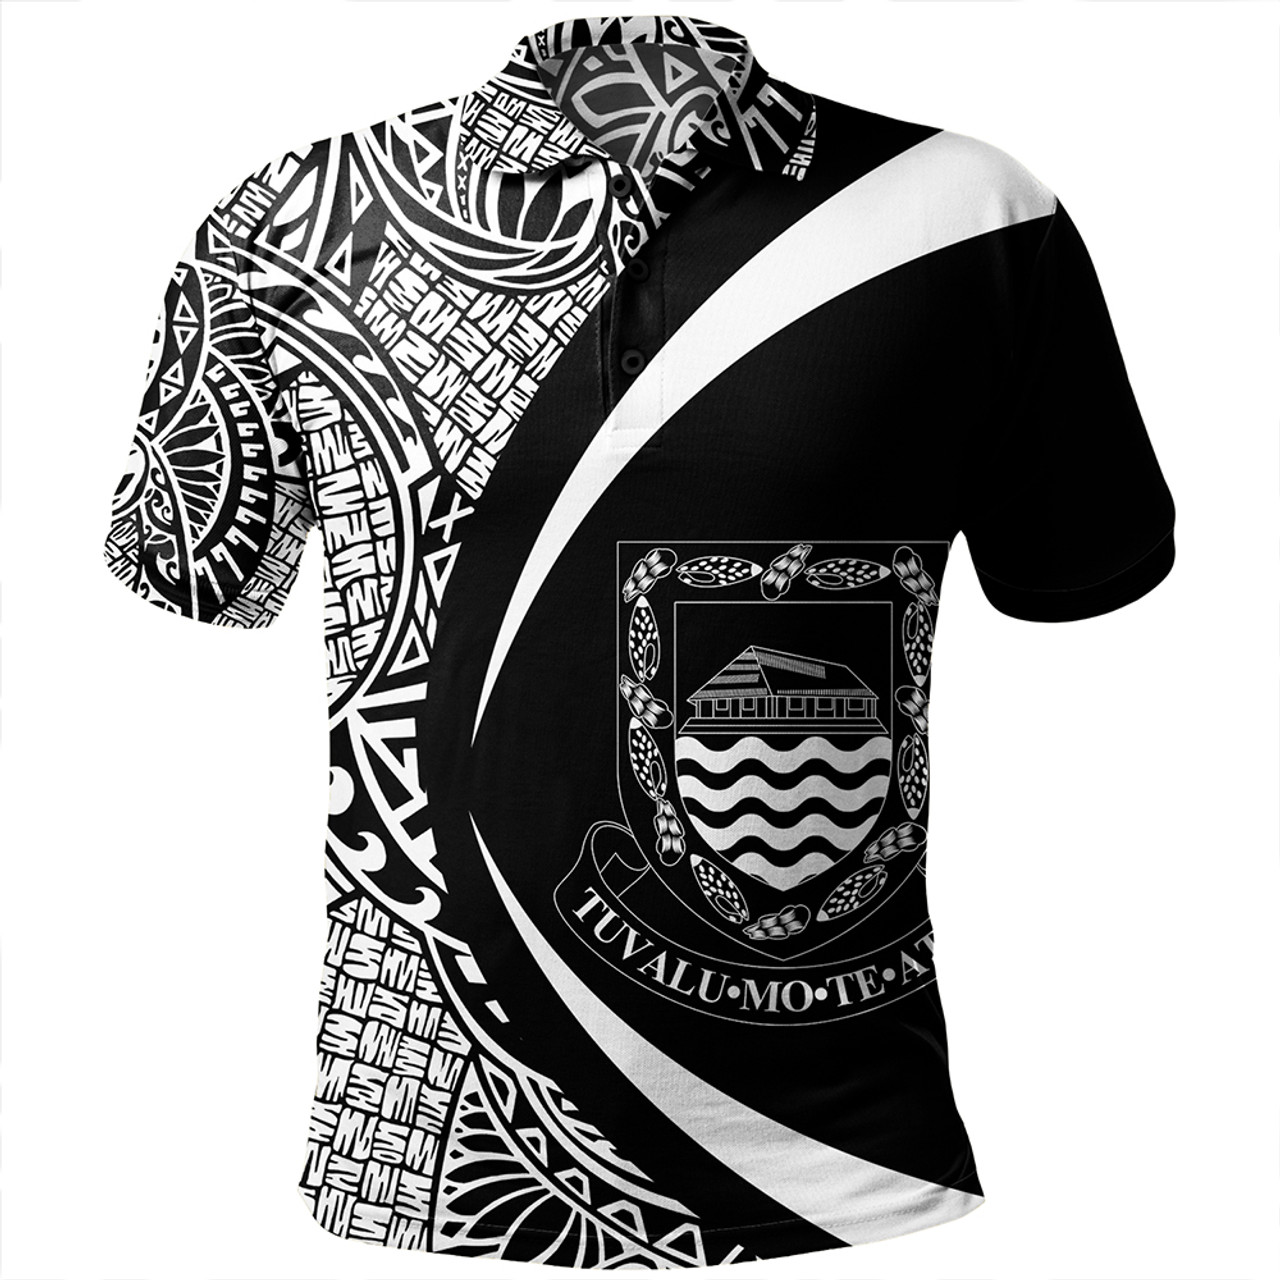 Tuvalu Polo Shirt Coat Of Arm Lauhala White Circle